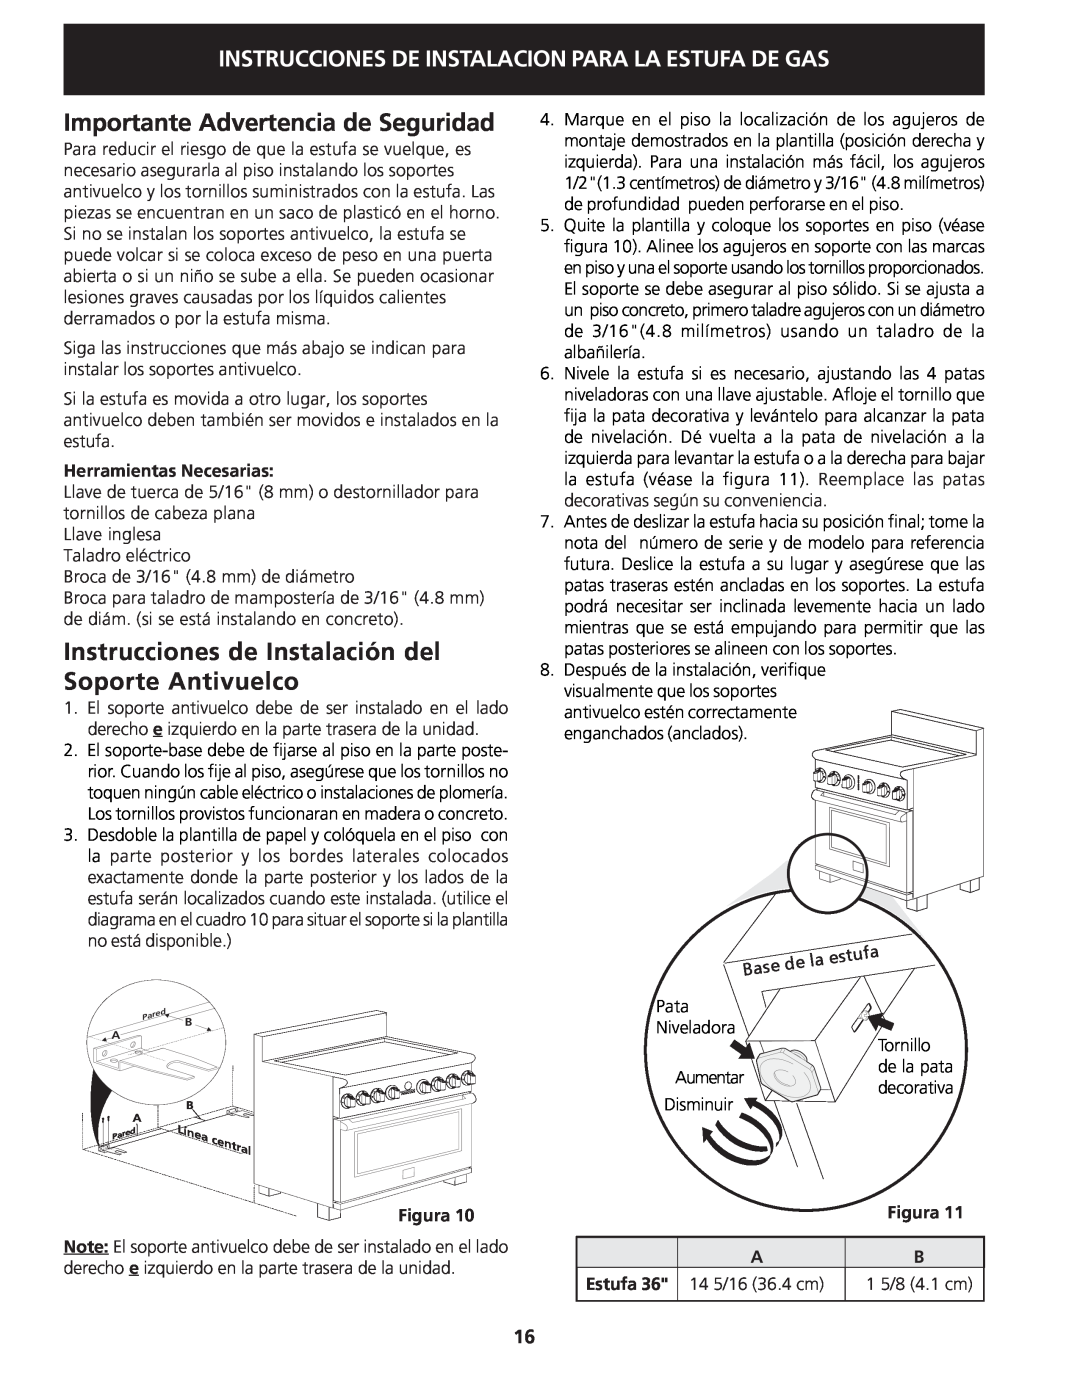 Electrolux 318201778 Importante Advertencia de Seguridad, Herramientas Necesarias, Figura, Estufa, 14 5/16 36.4 cm 